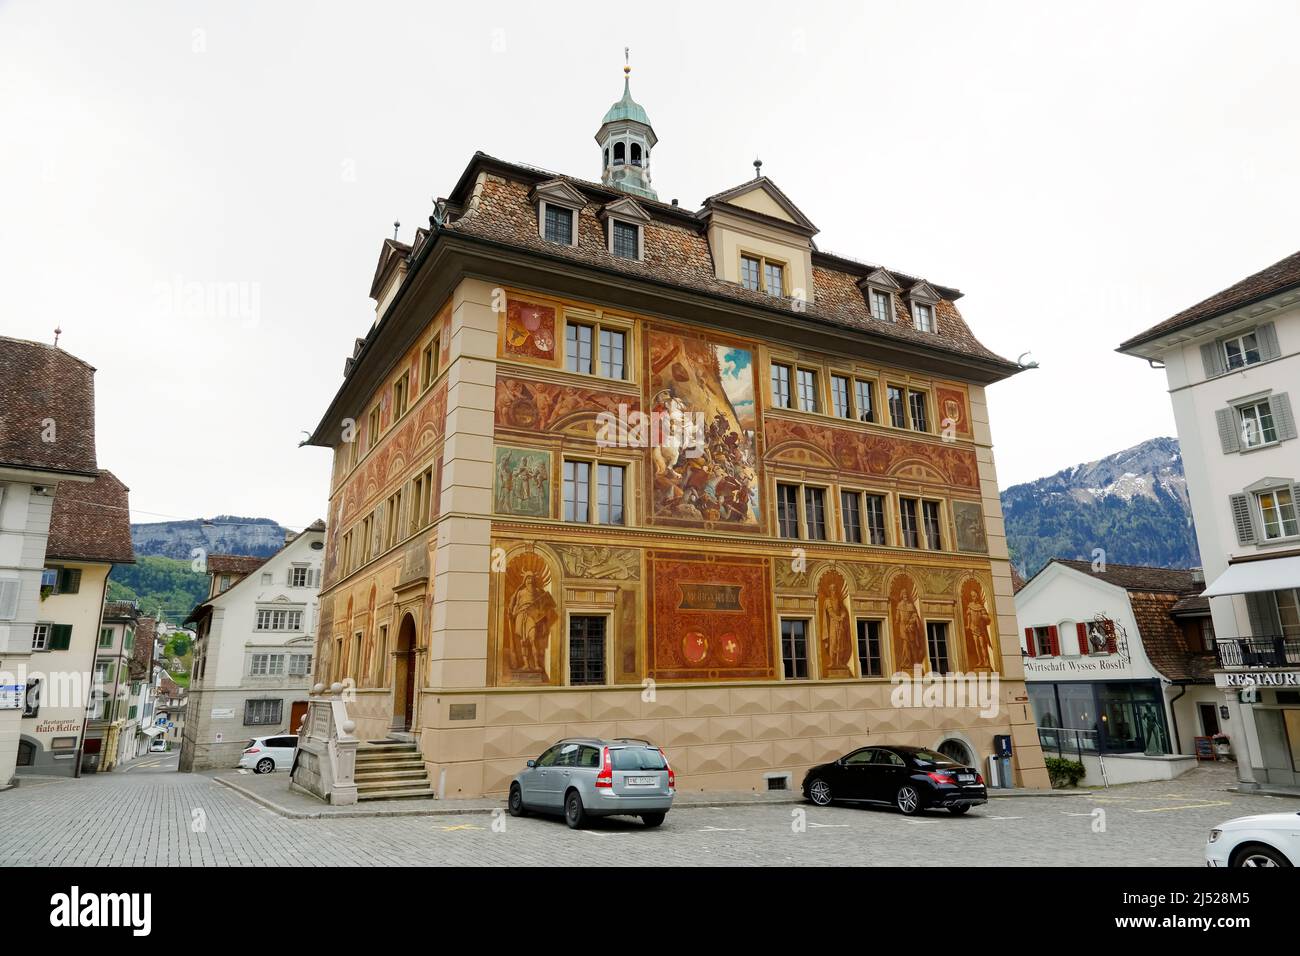 Schwyz, Suiza - 09 de mayo de 2016: El ayuntamiento de Schwyz fue construido en el siglo 17th. Las pinturas murales se hicieron con motivo de la 600th A. Foto de stock